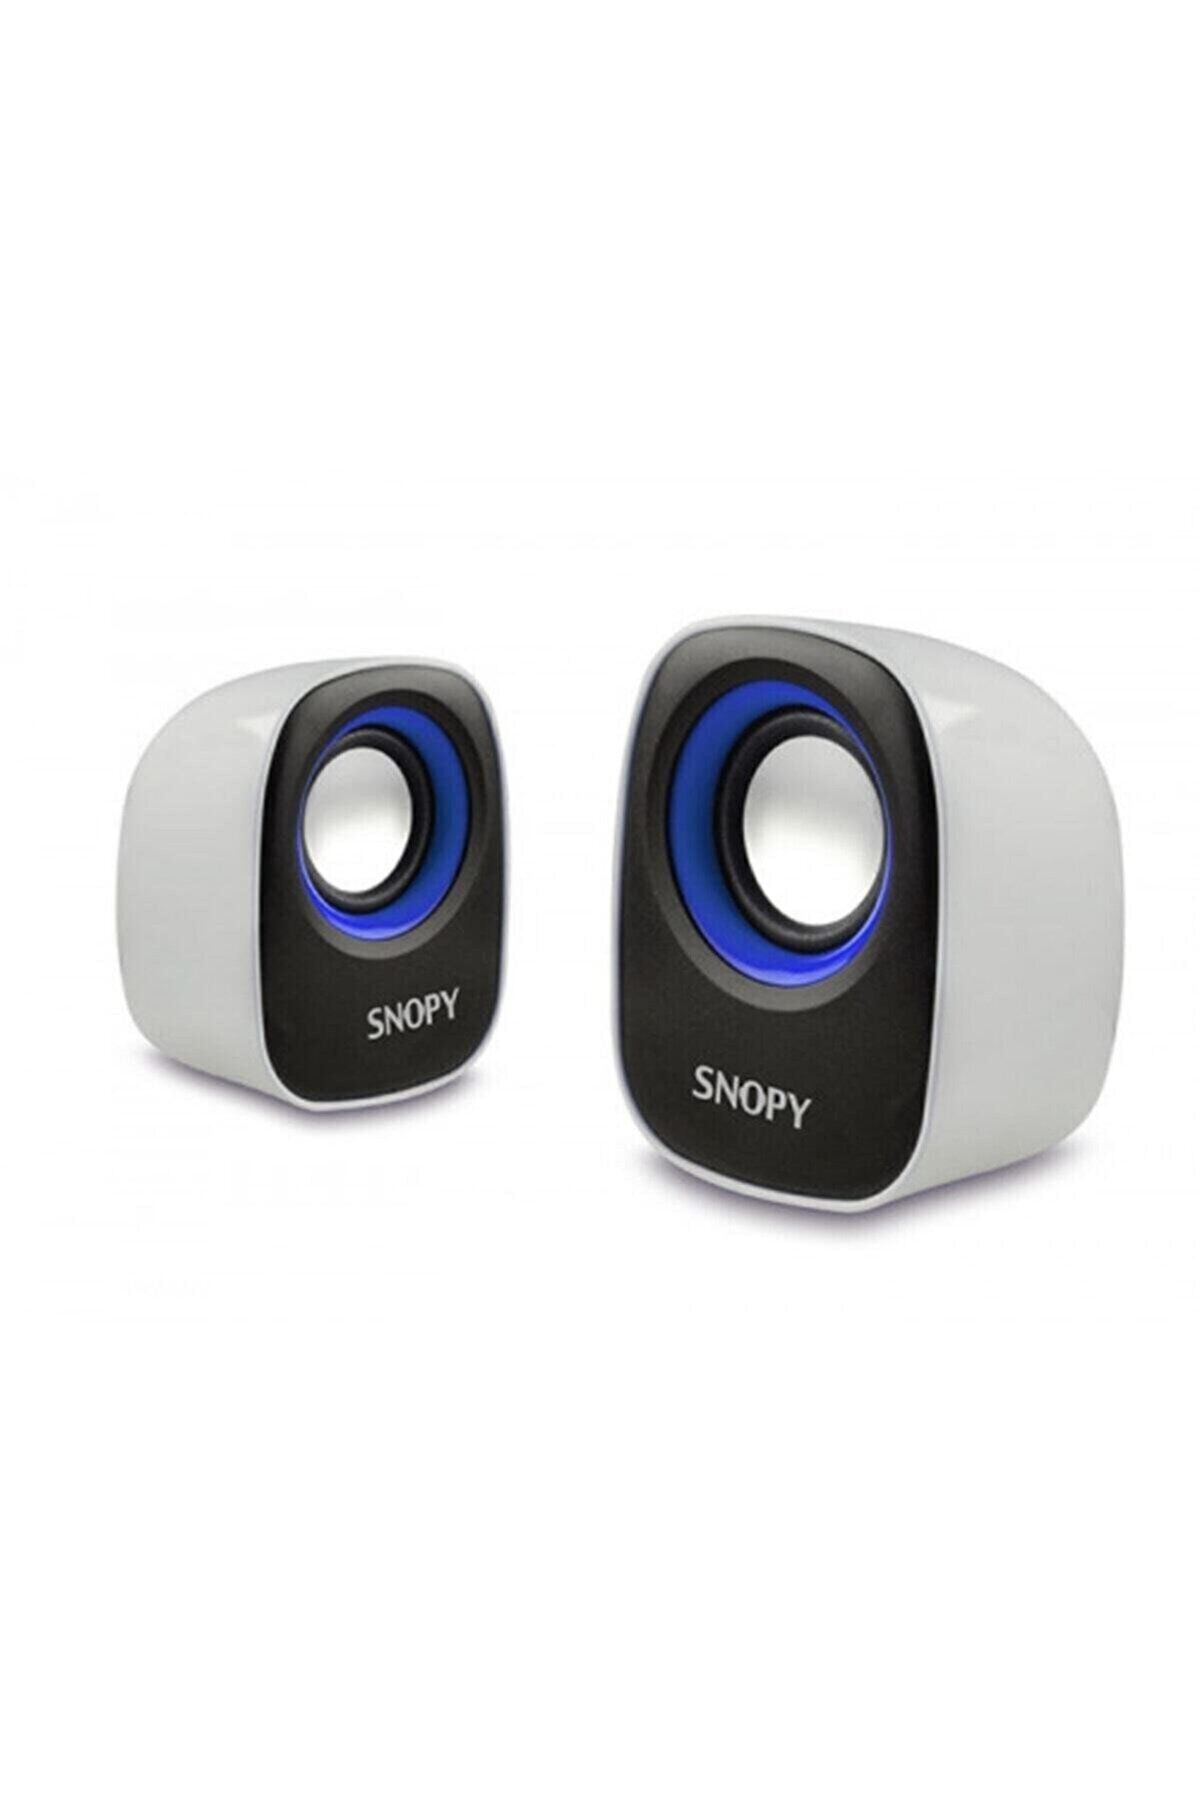 Snopy Bul - Kar Inovasyon Sn-120 2.0 Multımedıa Speaker Set